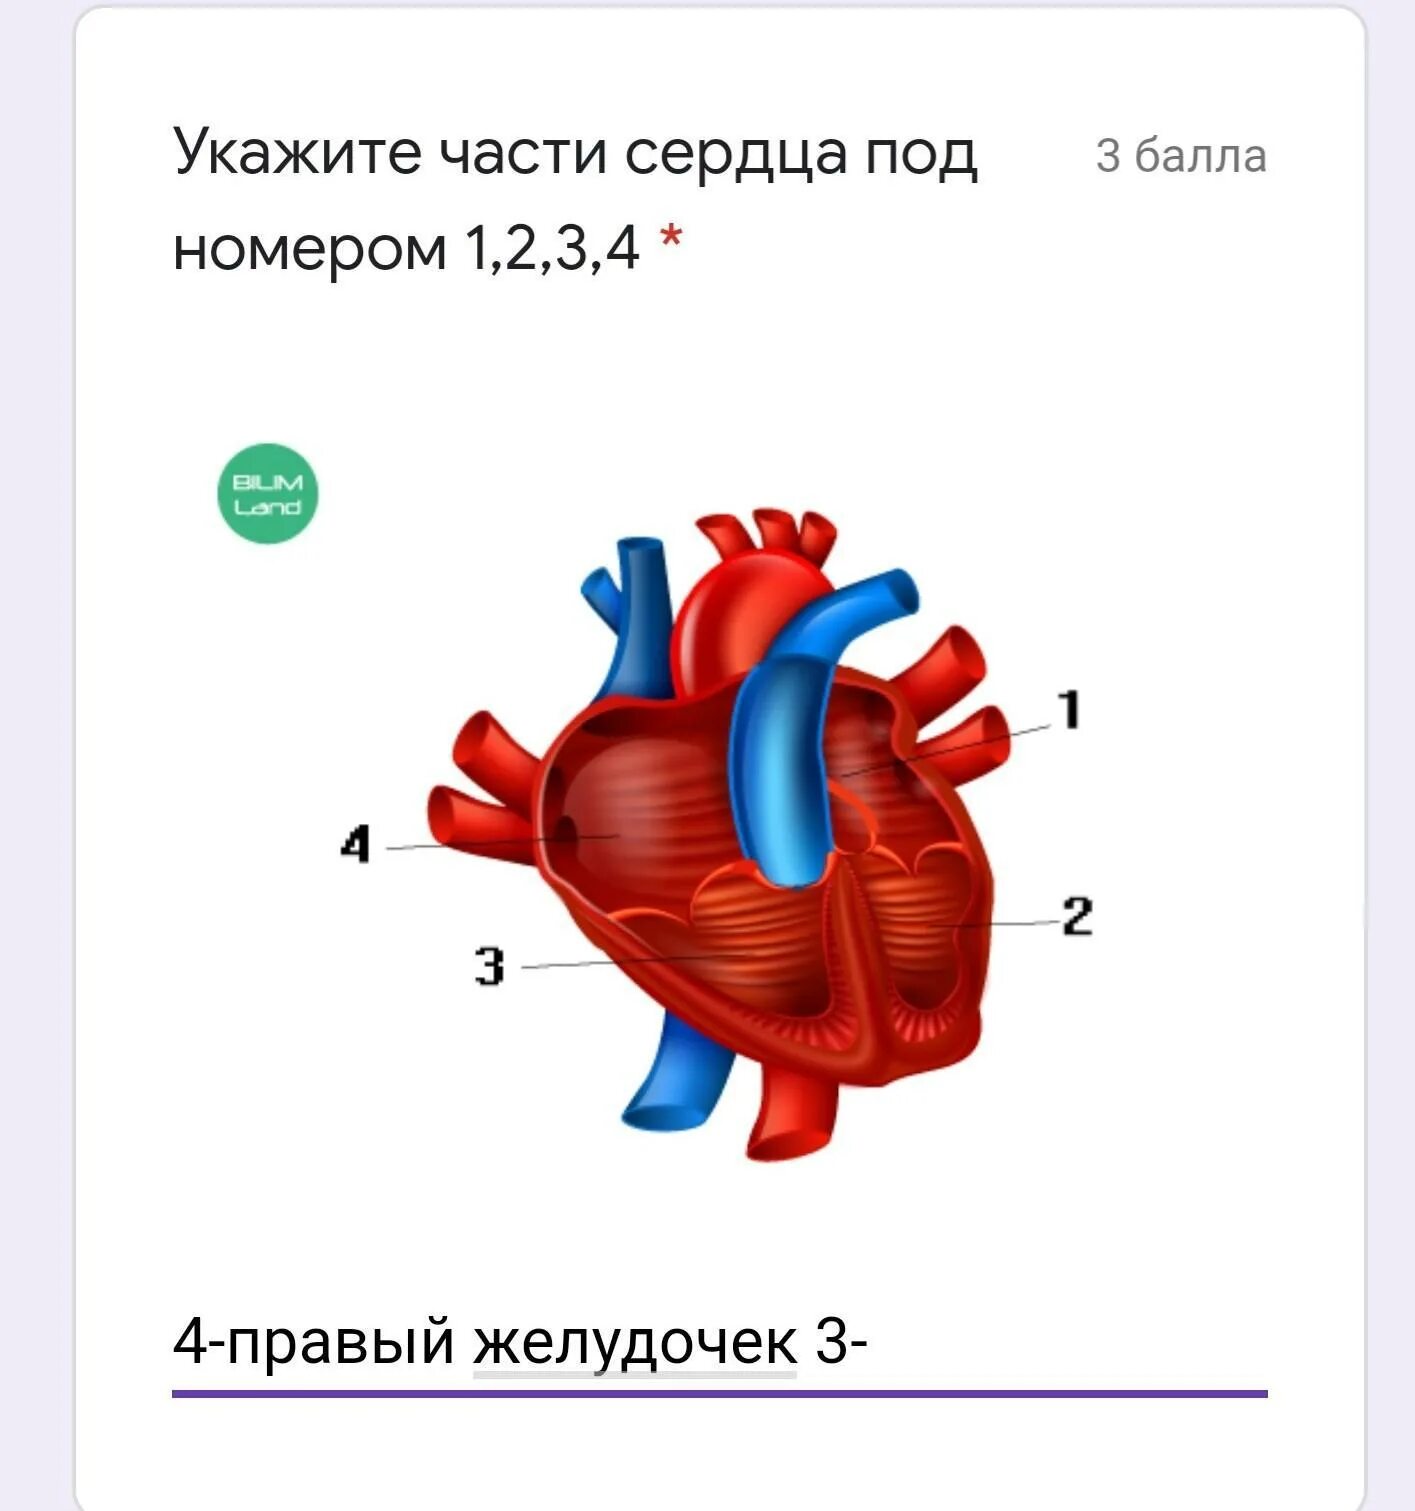 Название крови в правой части сердца. Части сердца. Строение сердца человека. Сердце на две части. Сердце по частям.